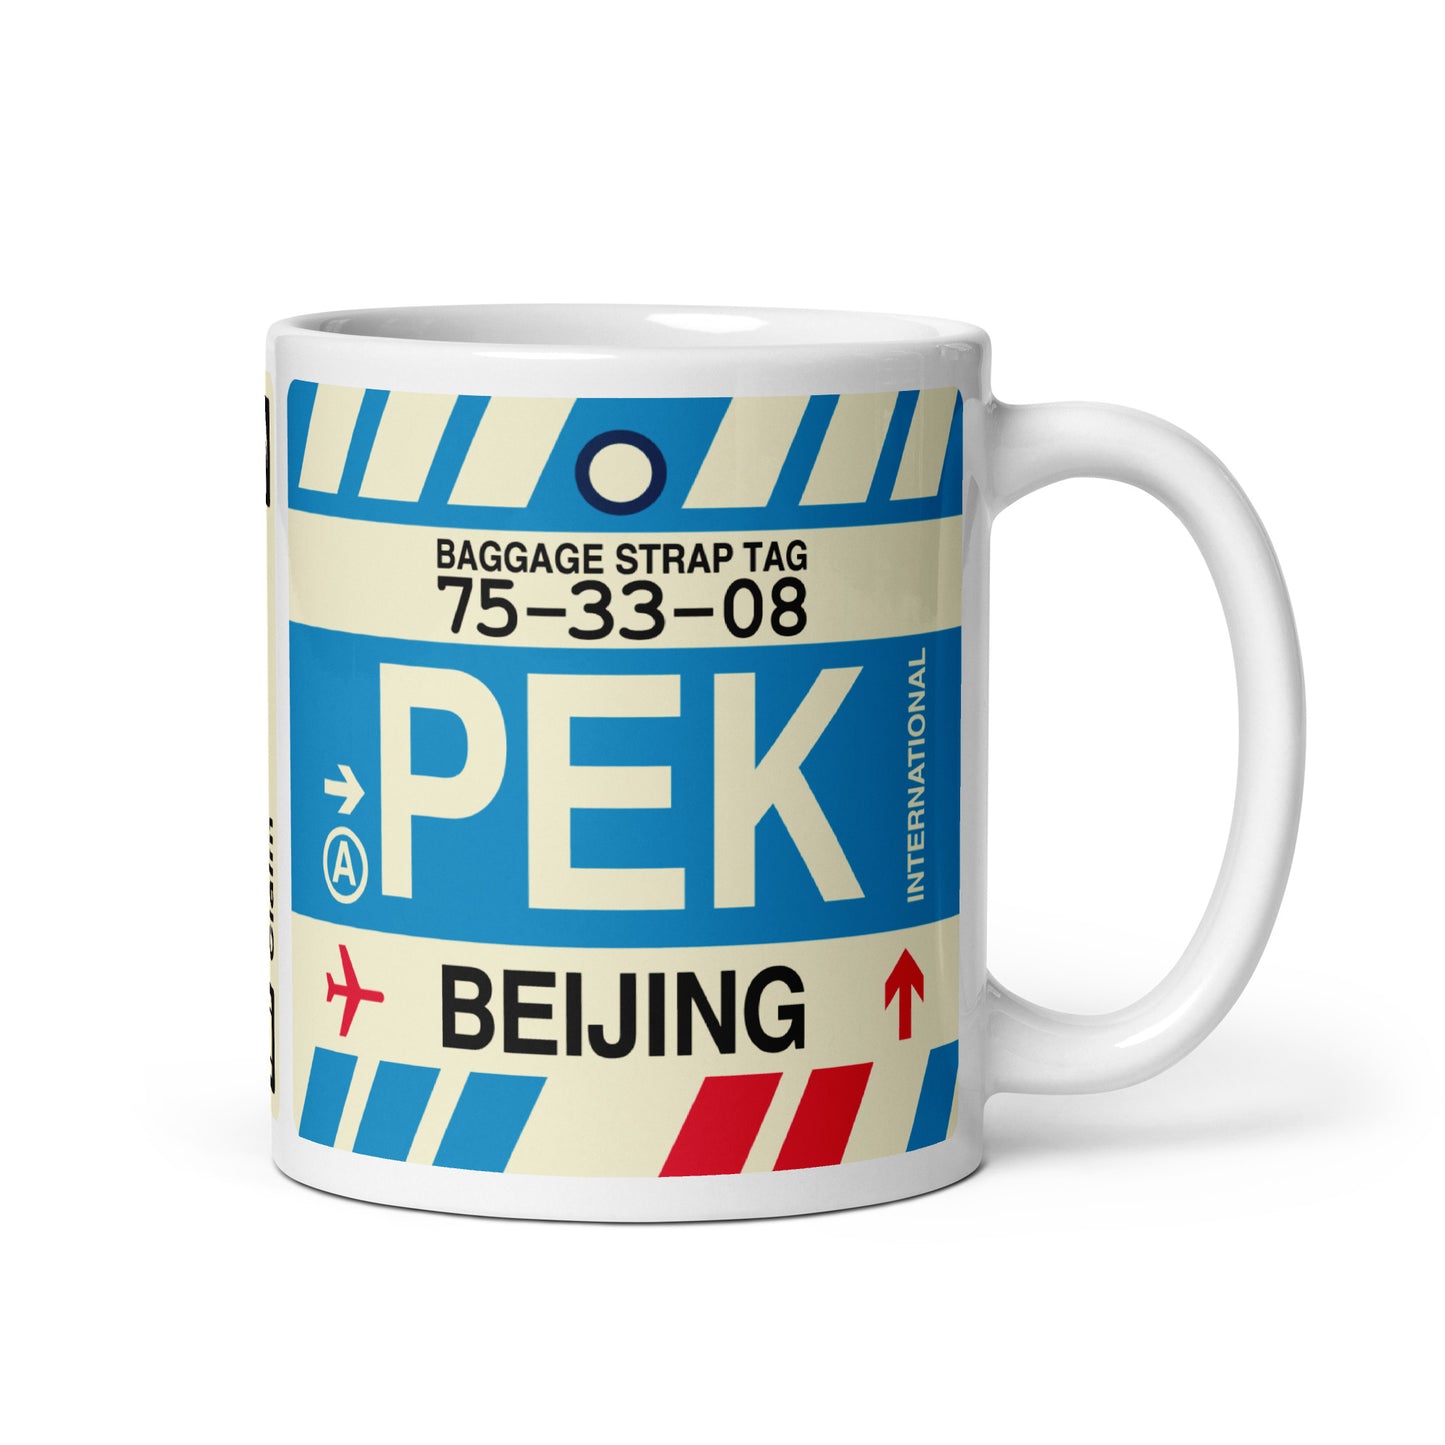 Travel Gift Coffee Mug • PEK Beijing • YHM Designs - Image 01